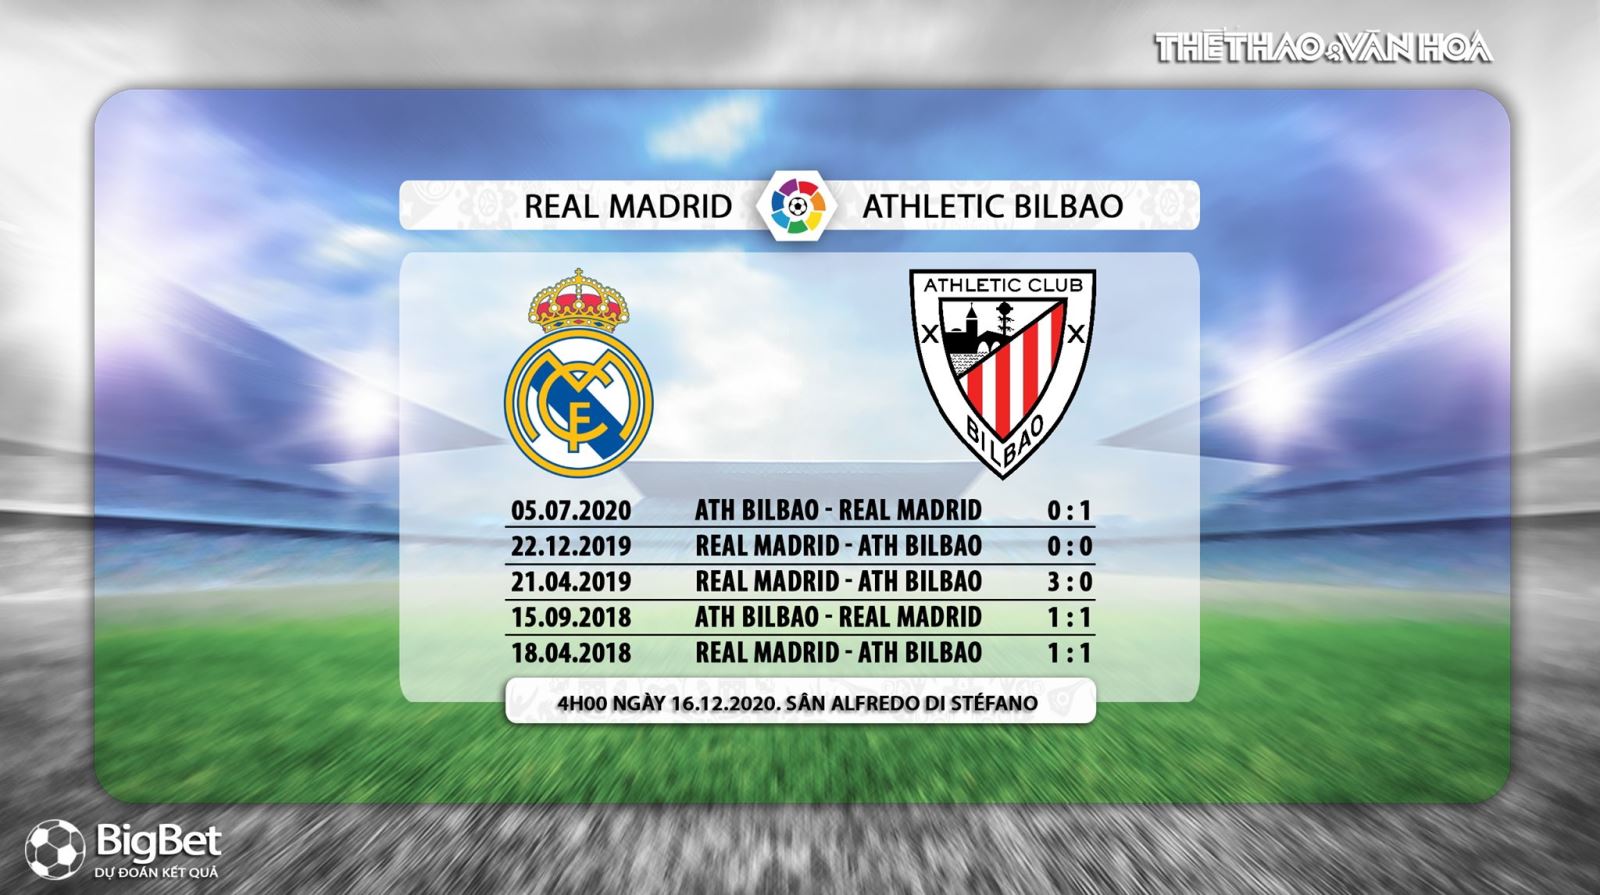 Keo nha cai, kèo nhà cái, Real Madrid vs Athletic Bilbao, Trực tiếp bóng đá Tây Ban Nha, trực tiếp vòng 14 La Liga, trực tiếp Real Madrid đấu với Bilbao, truc tiep Real